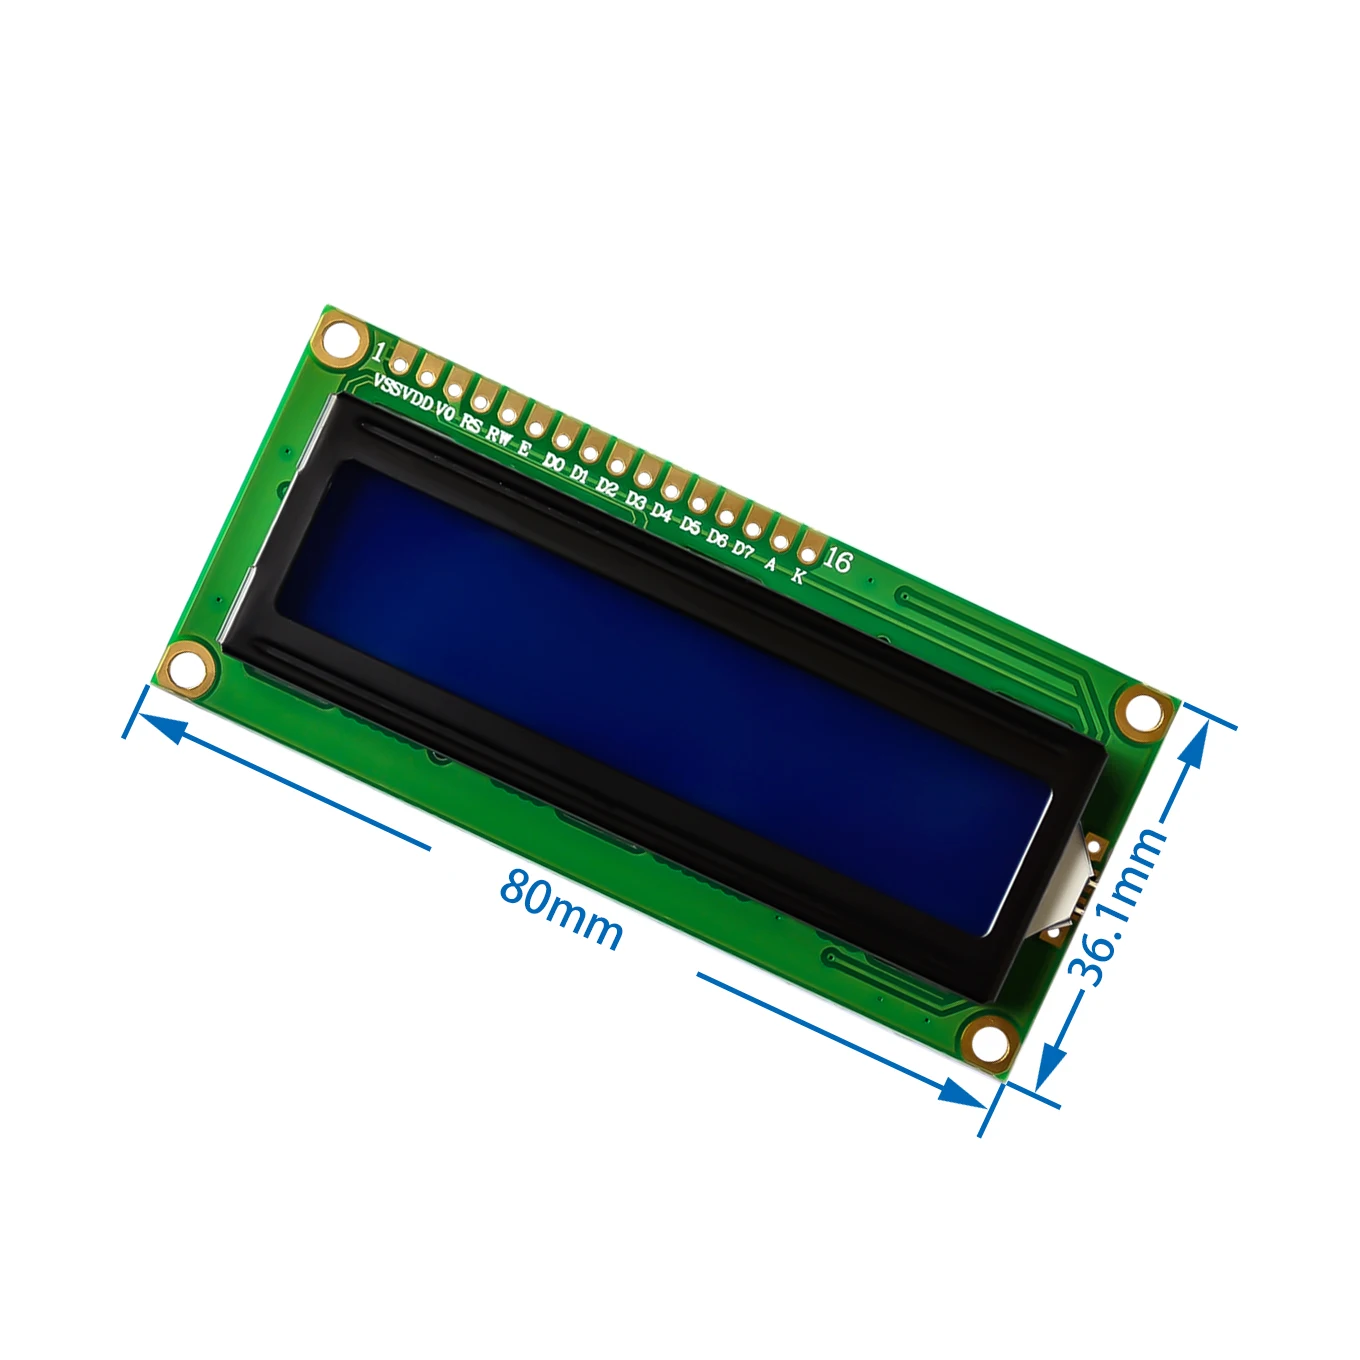 [Ah ROBOT】 LCD 1602 Модуль зеленый экран 16x2 символа ЖК дисплей модуль. 5 В и белый код для